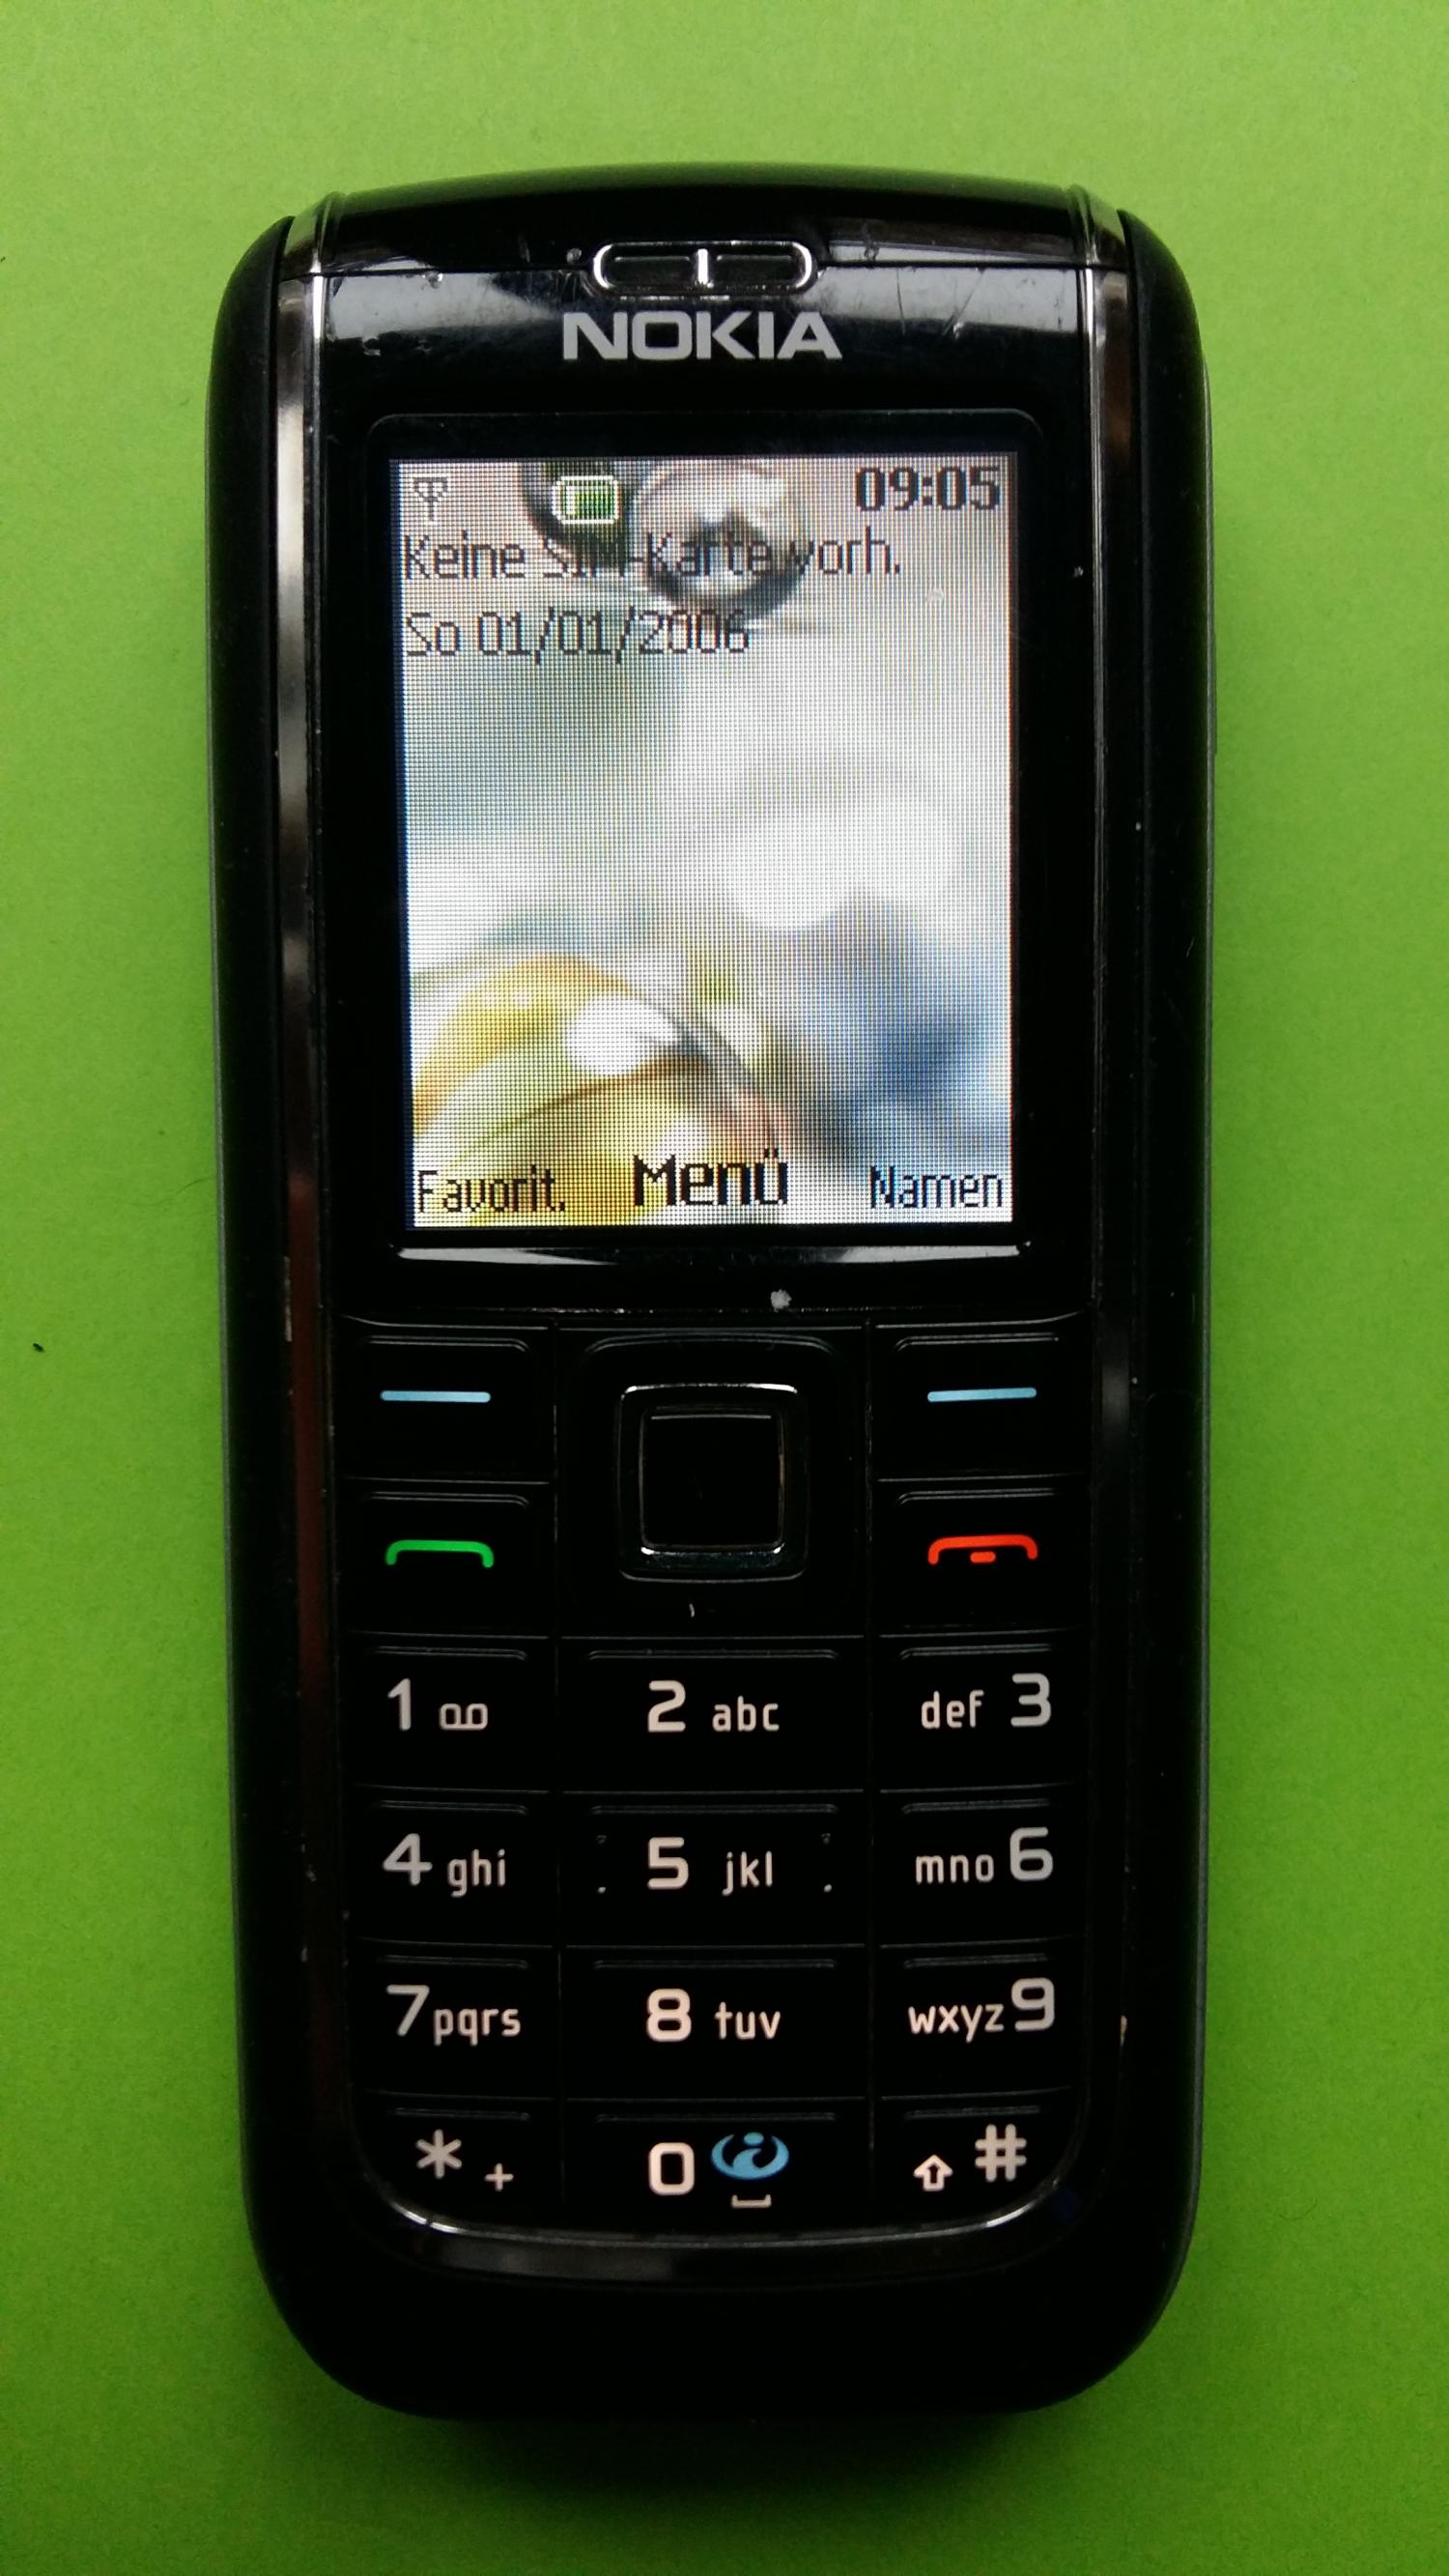 image-7325265-Nokia 6151 (2)1.jpg